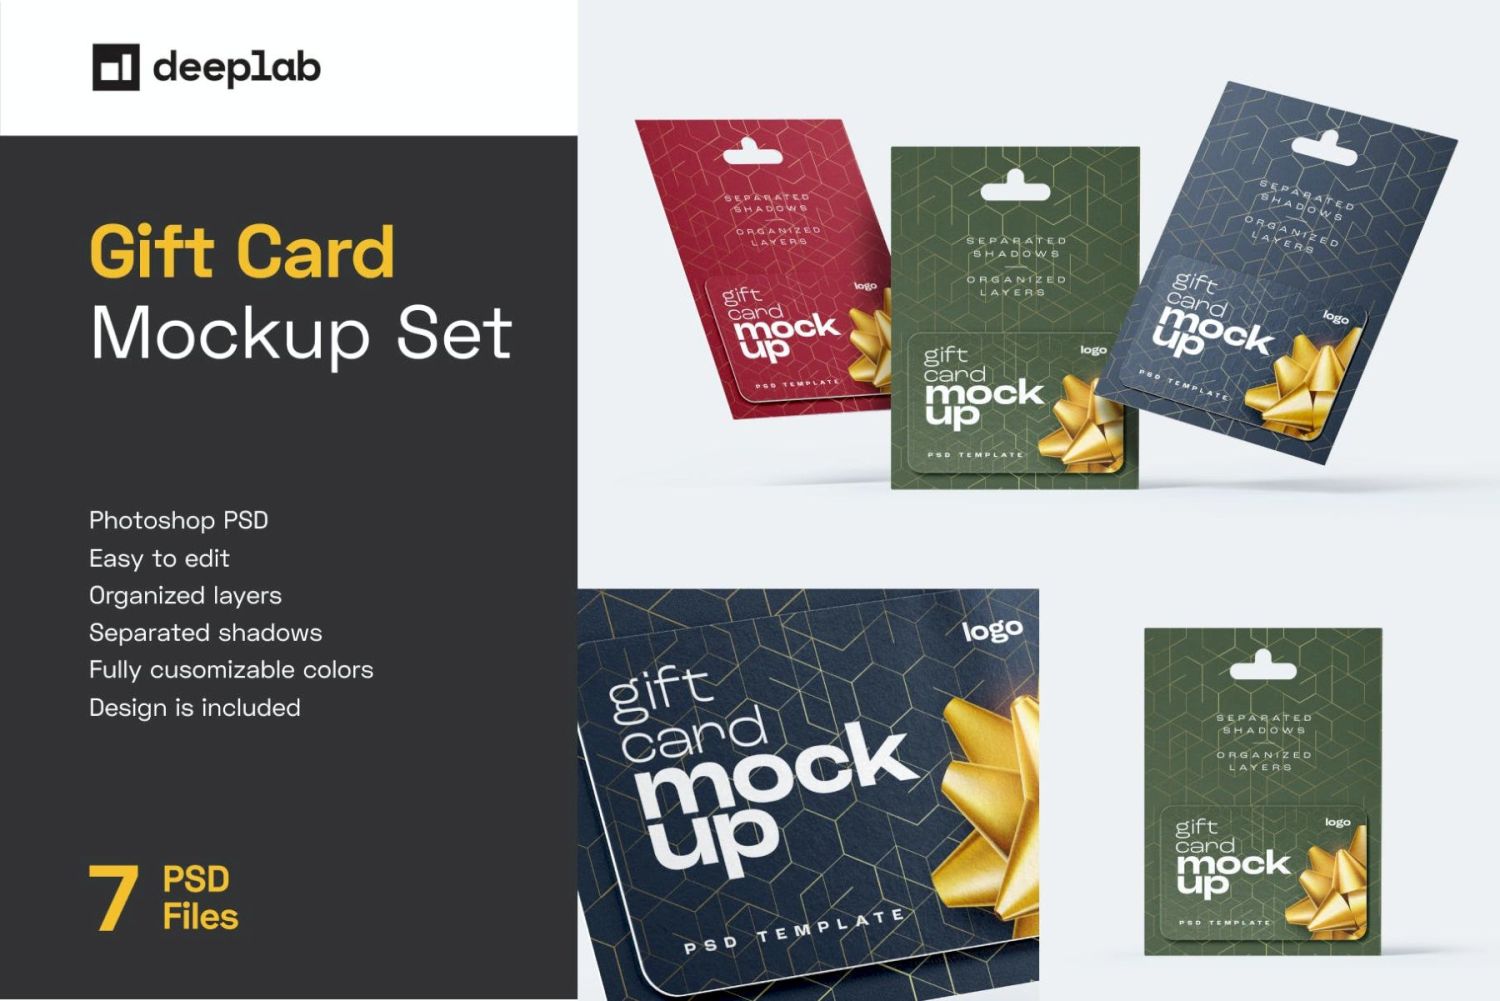 礼品卡样机集 Gift Card Mockup Set插图